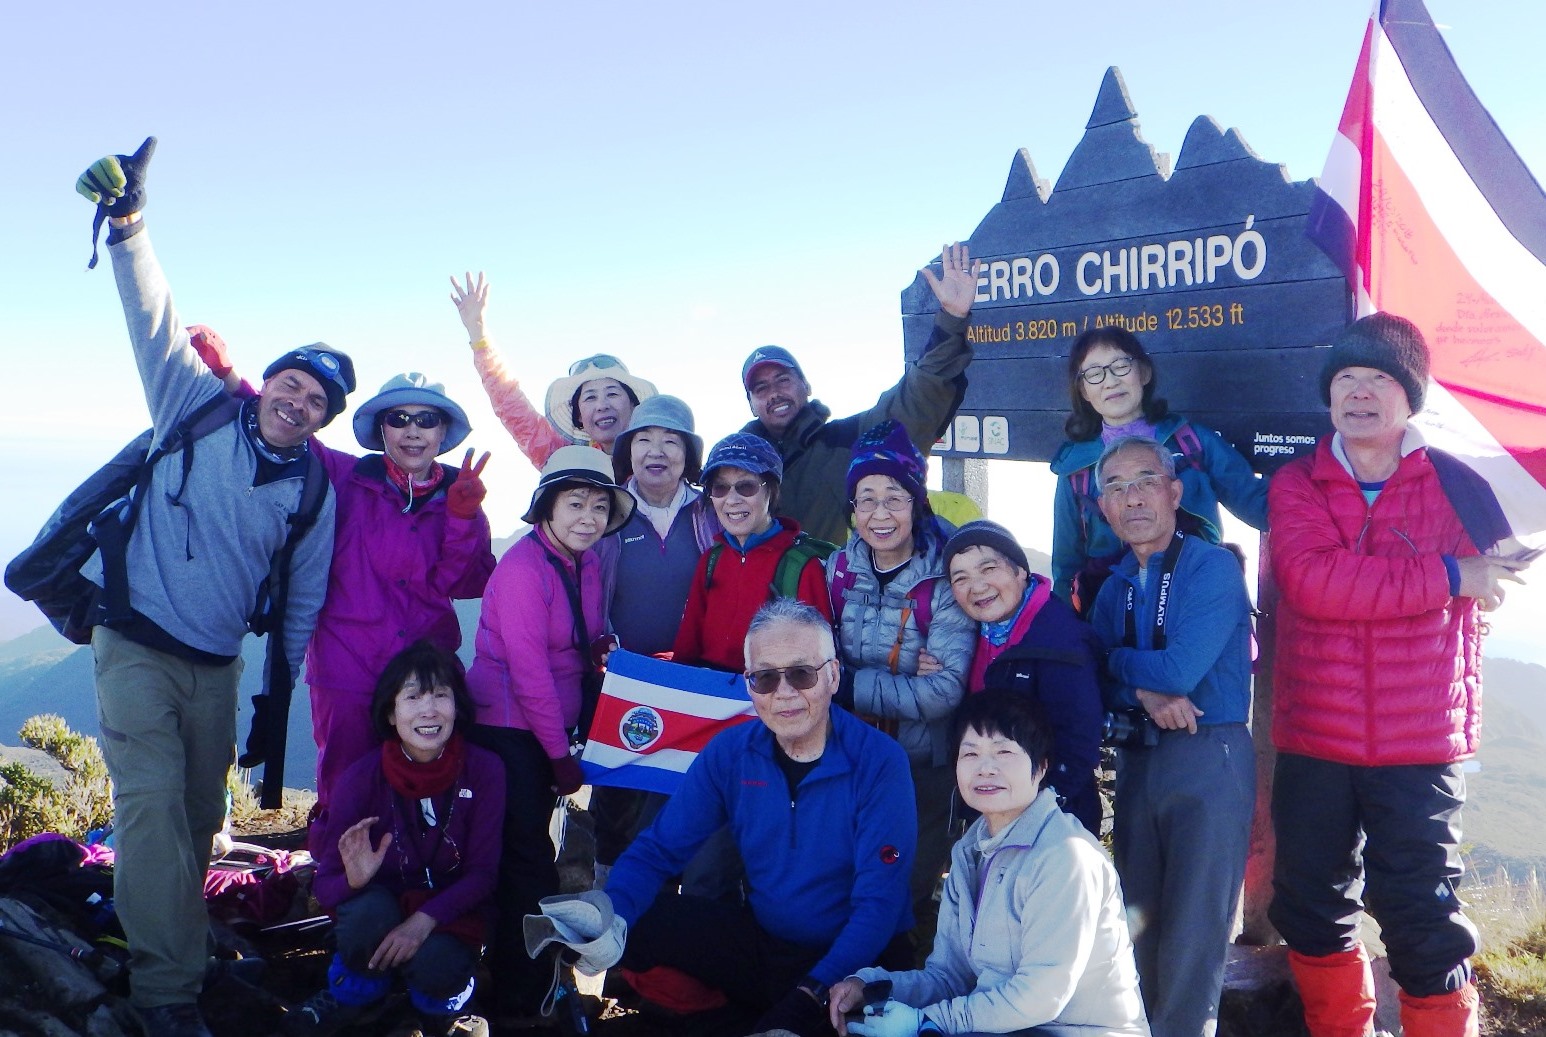 4月7日出発「コスタリカ最高峰チリポ山登頂と 幻の鳥ケツァールを求めて11日間」